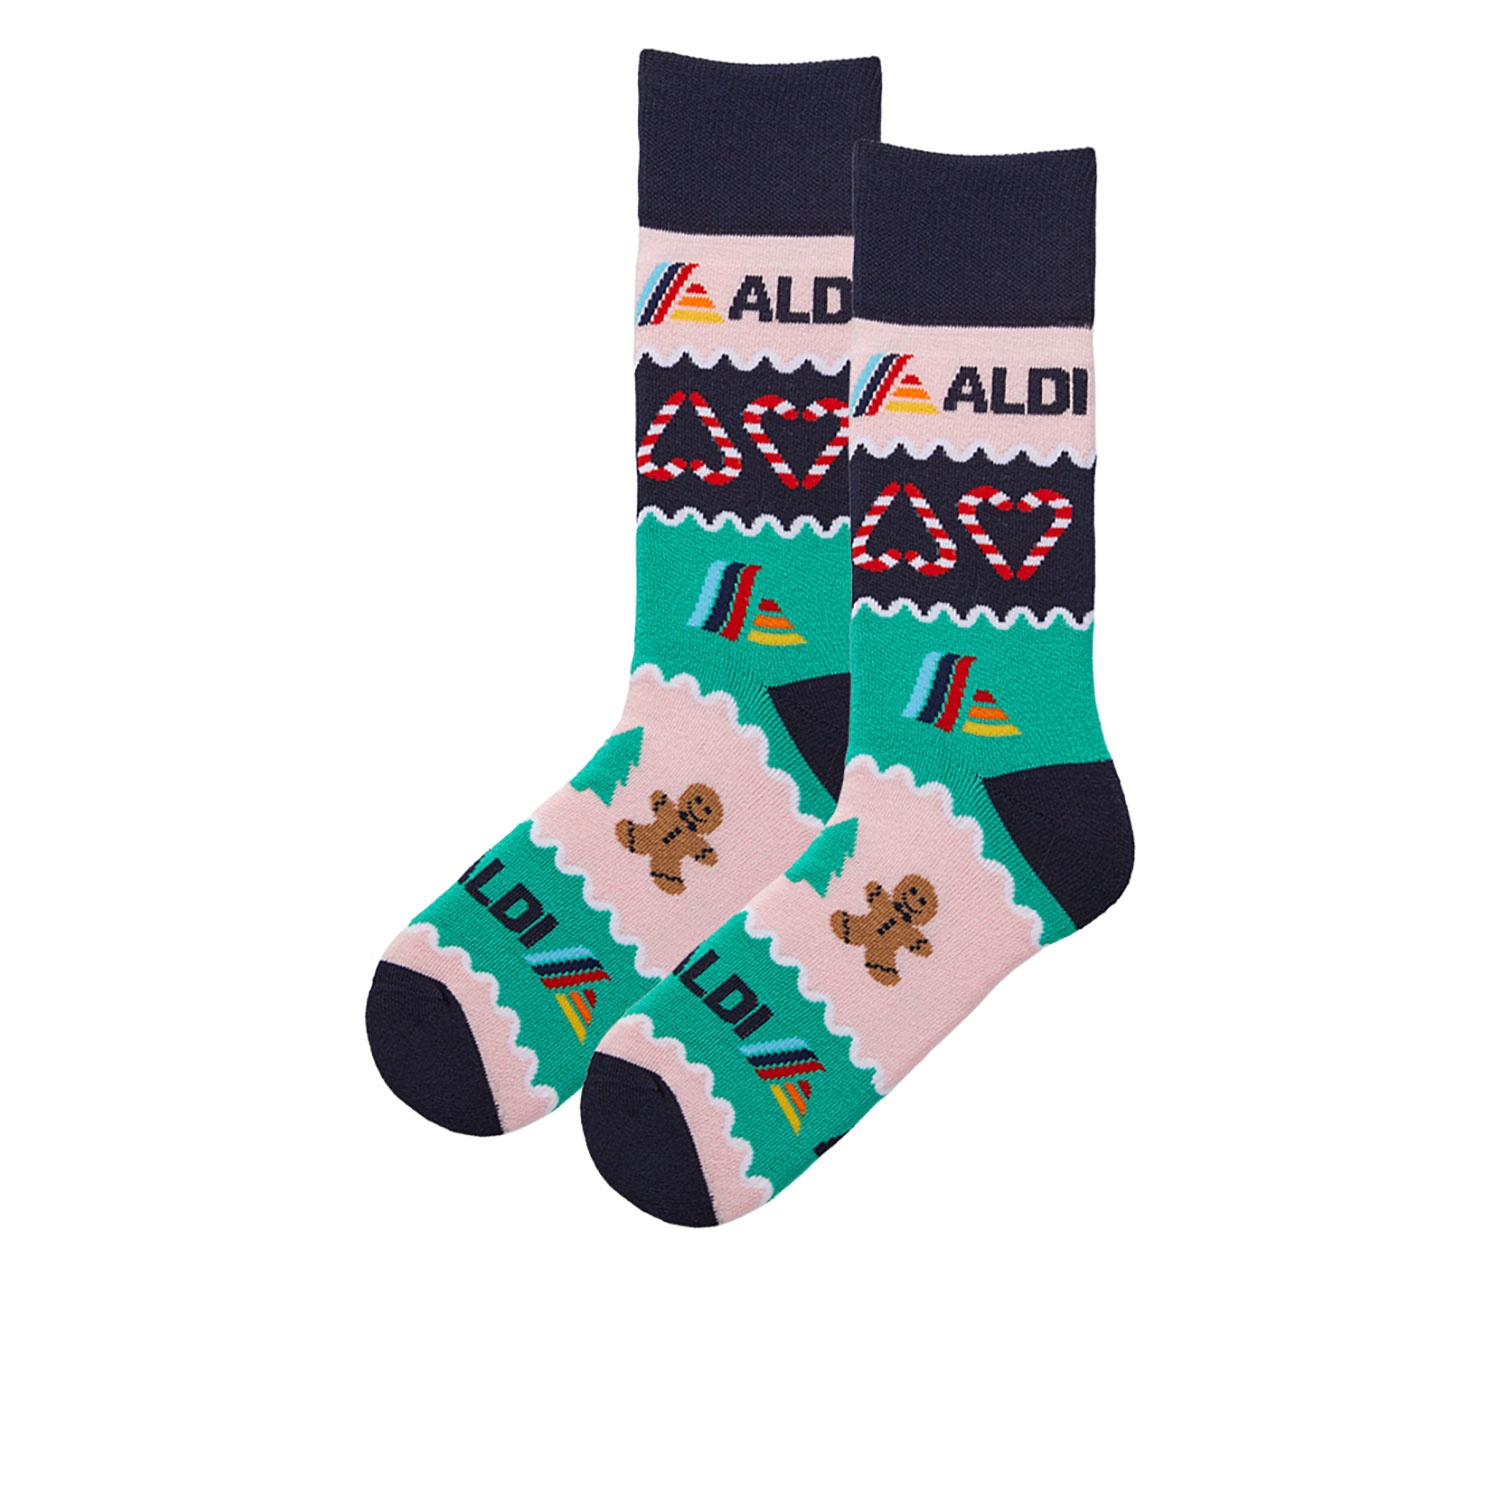 ALDIMANIA Damen und Herren Xmas-Socken